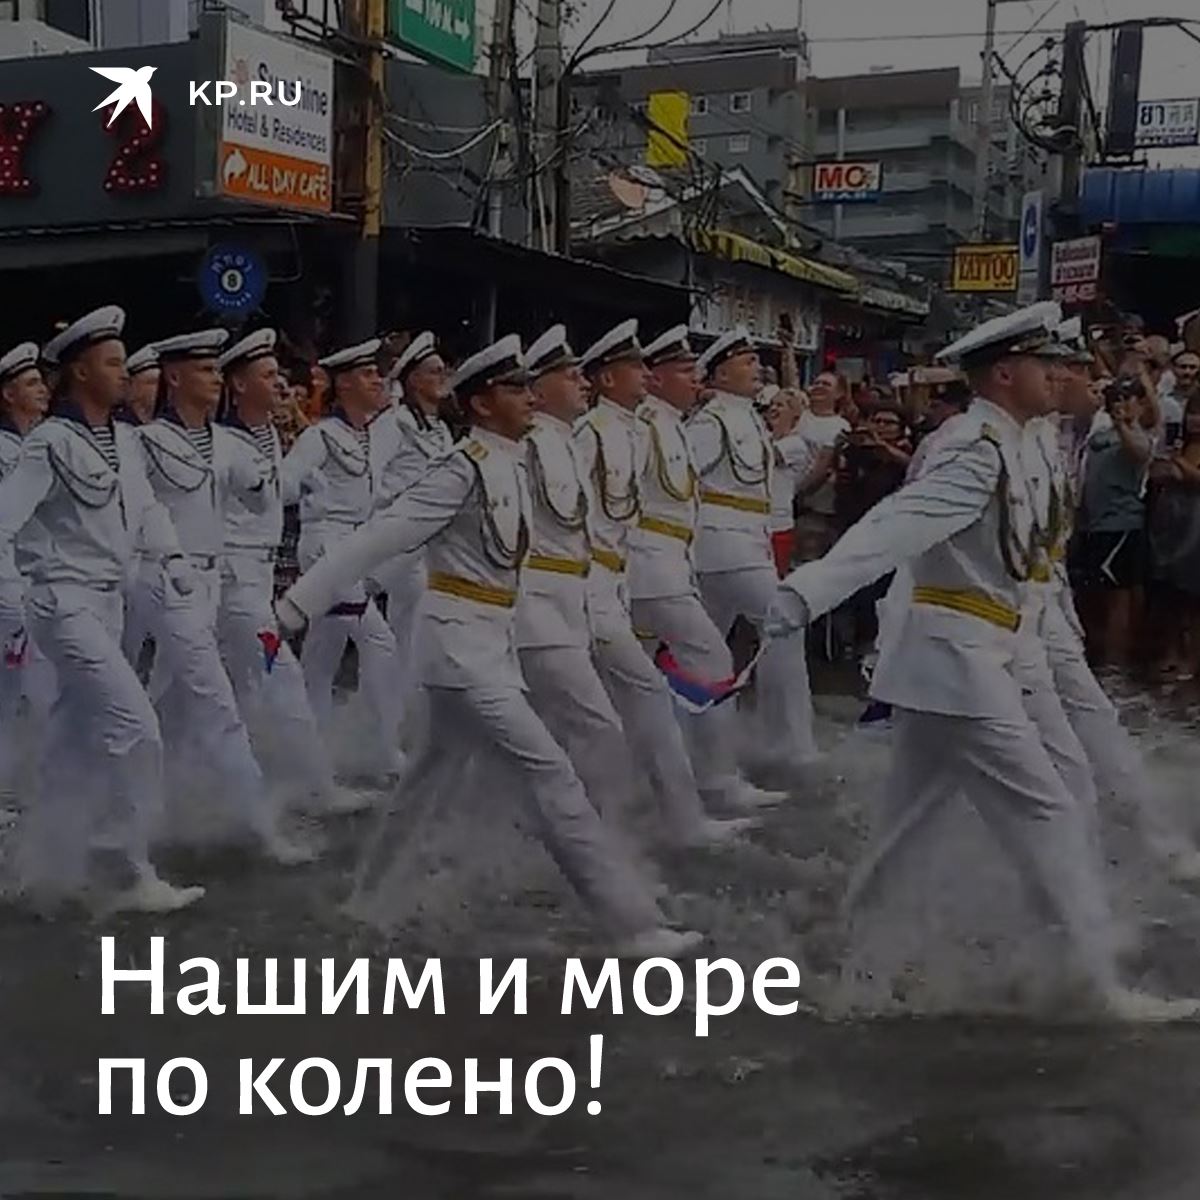 Видео парад в тайланде. Русские моряки на параде в Тайланде. Российские военные на параде в Тайланде. Парад в Японии русские моряки. Парад русских моряков в Тайланде после ливня.